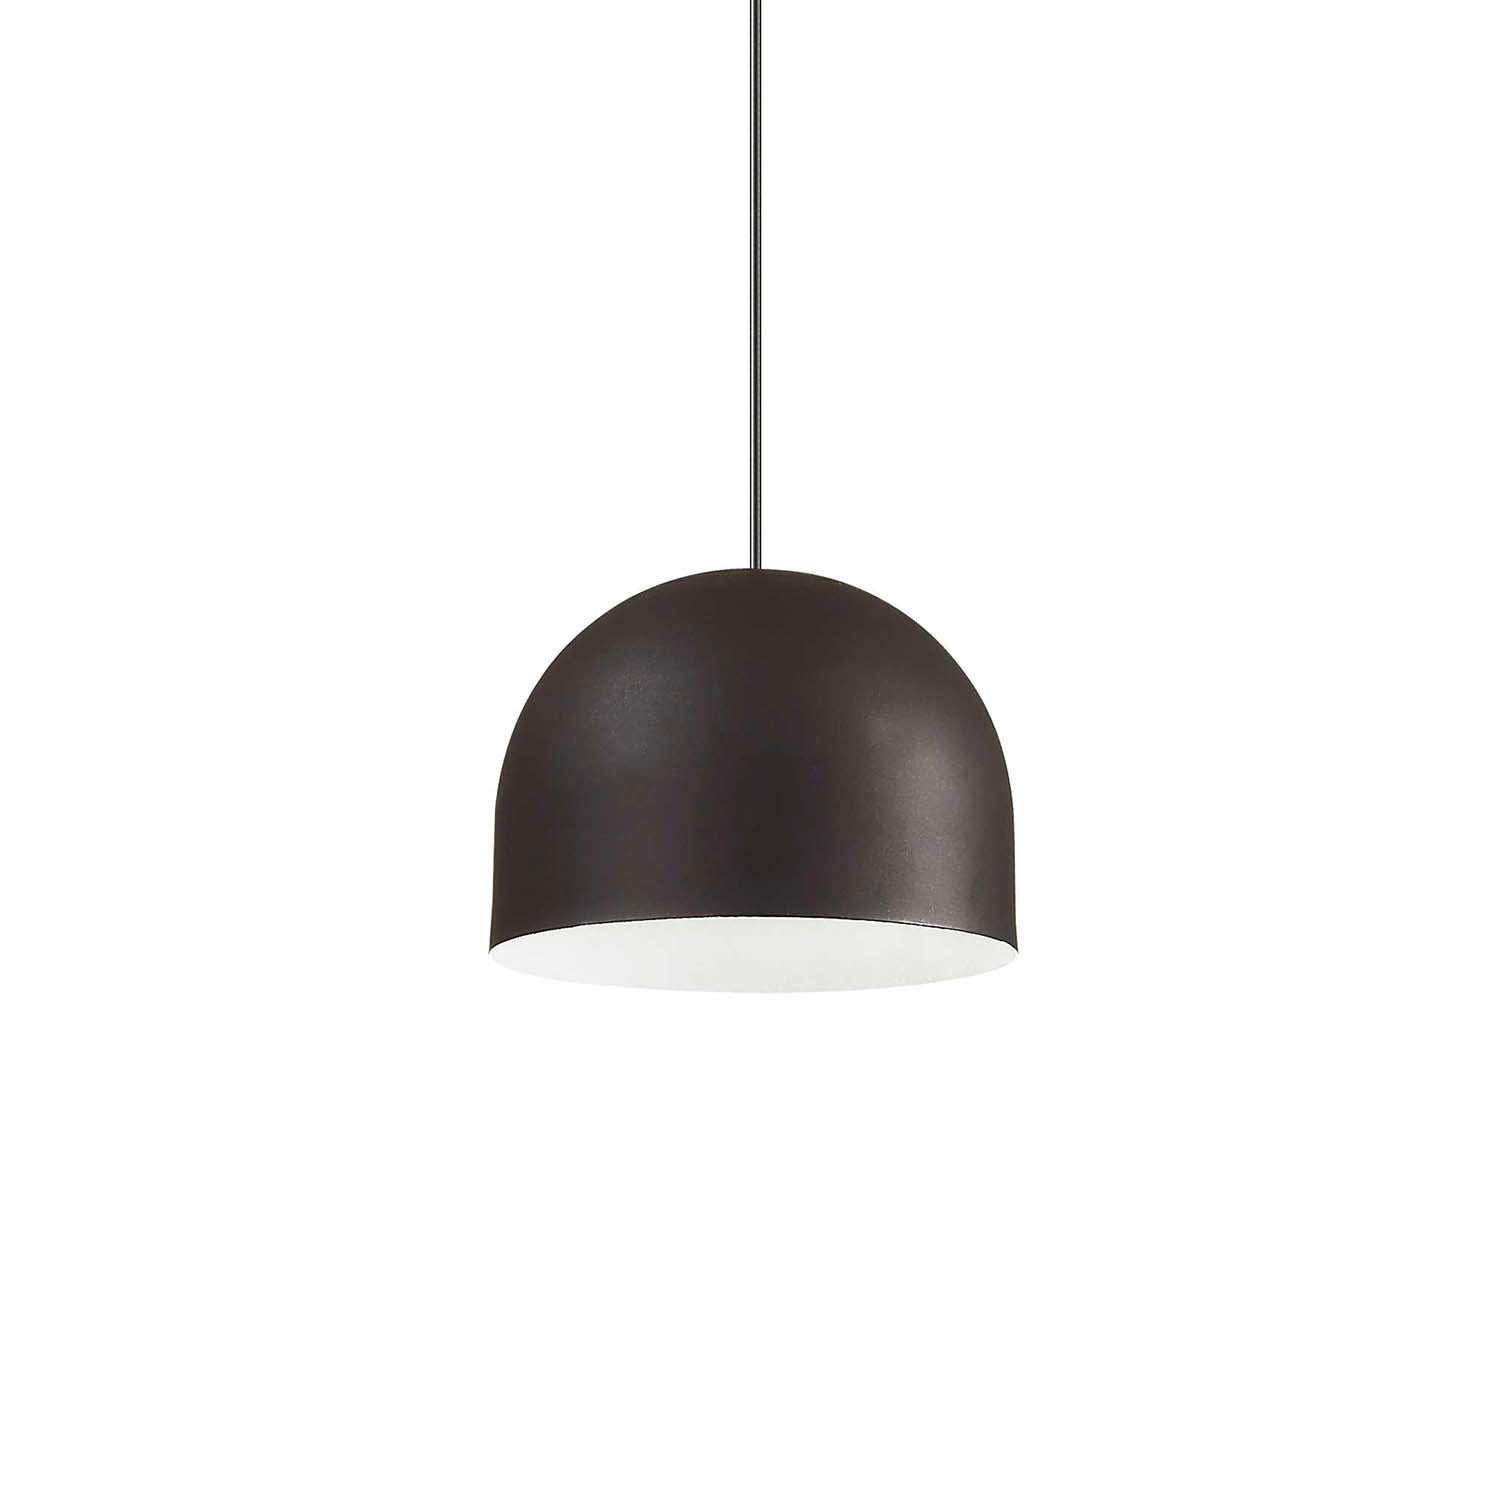 TALL - Designer black or white dome pendant light